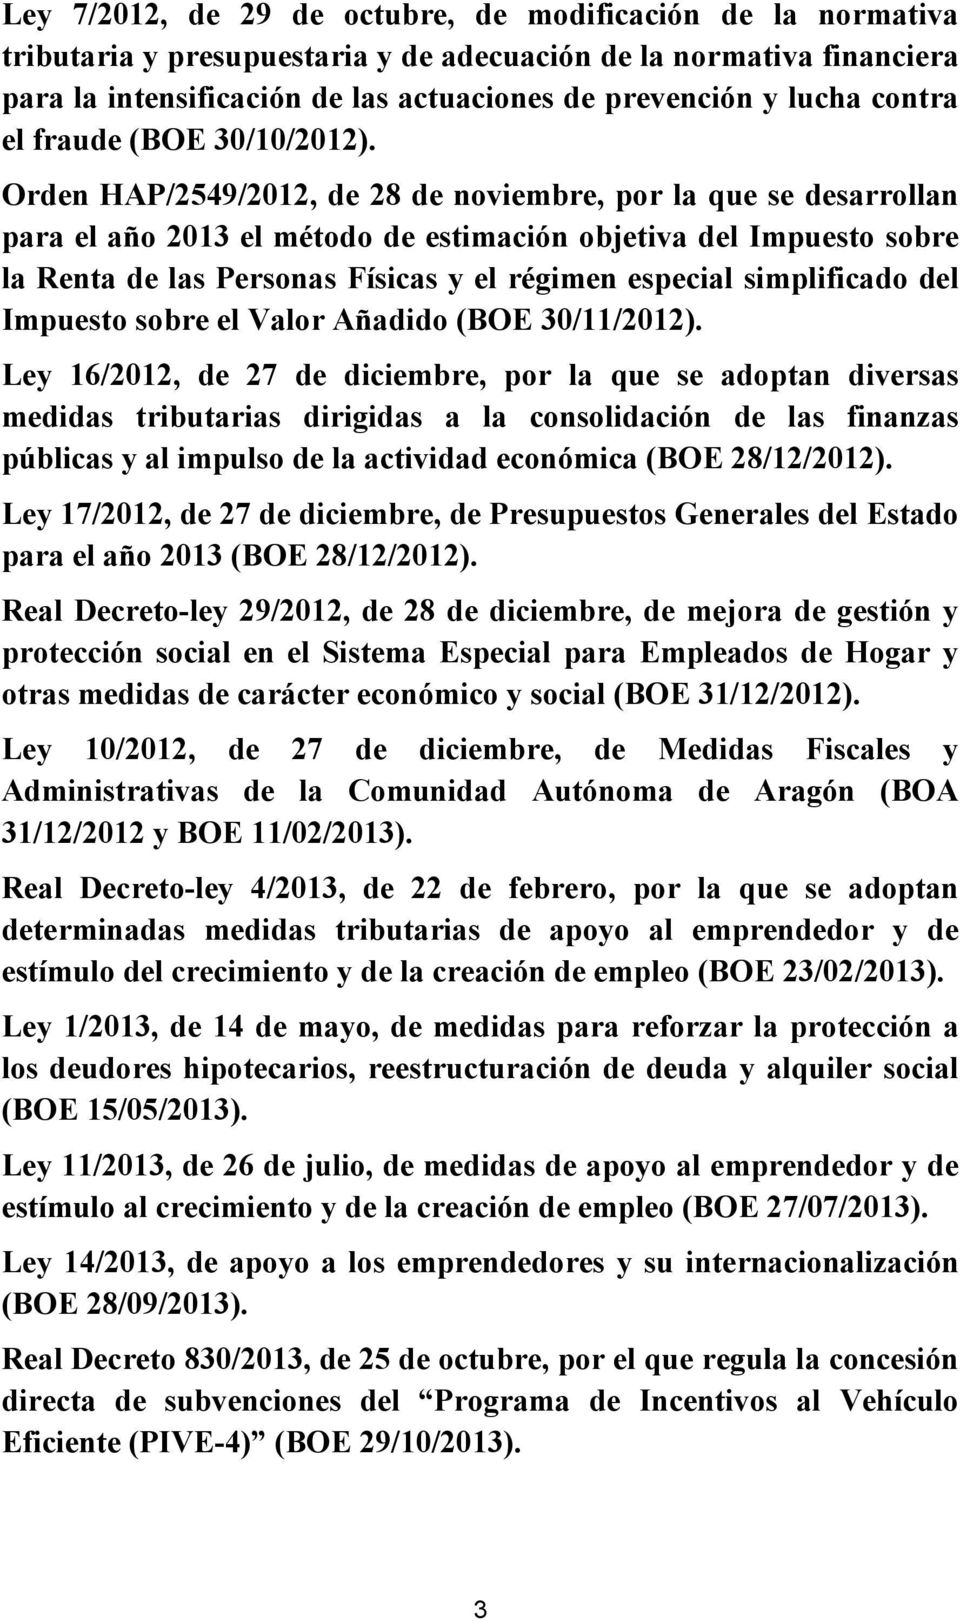 Orden HAP/2549/2012, de 28 de noviembre, por la que se desarrollan para el año 2013 el método de estimación objetiva del Impuesto sobre la Renta de las Personas Físicas y el régimen especial